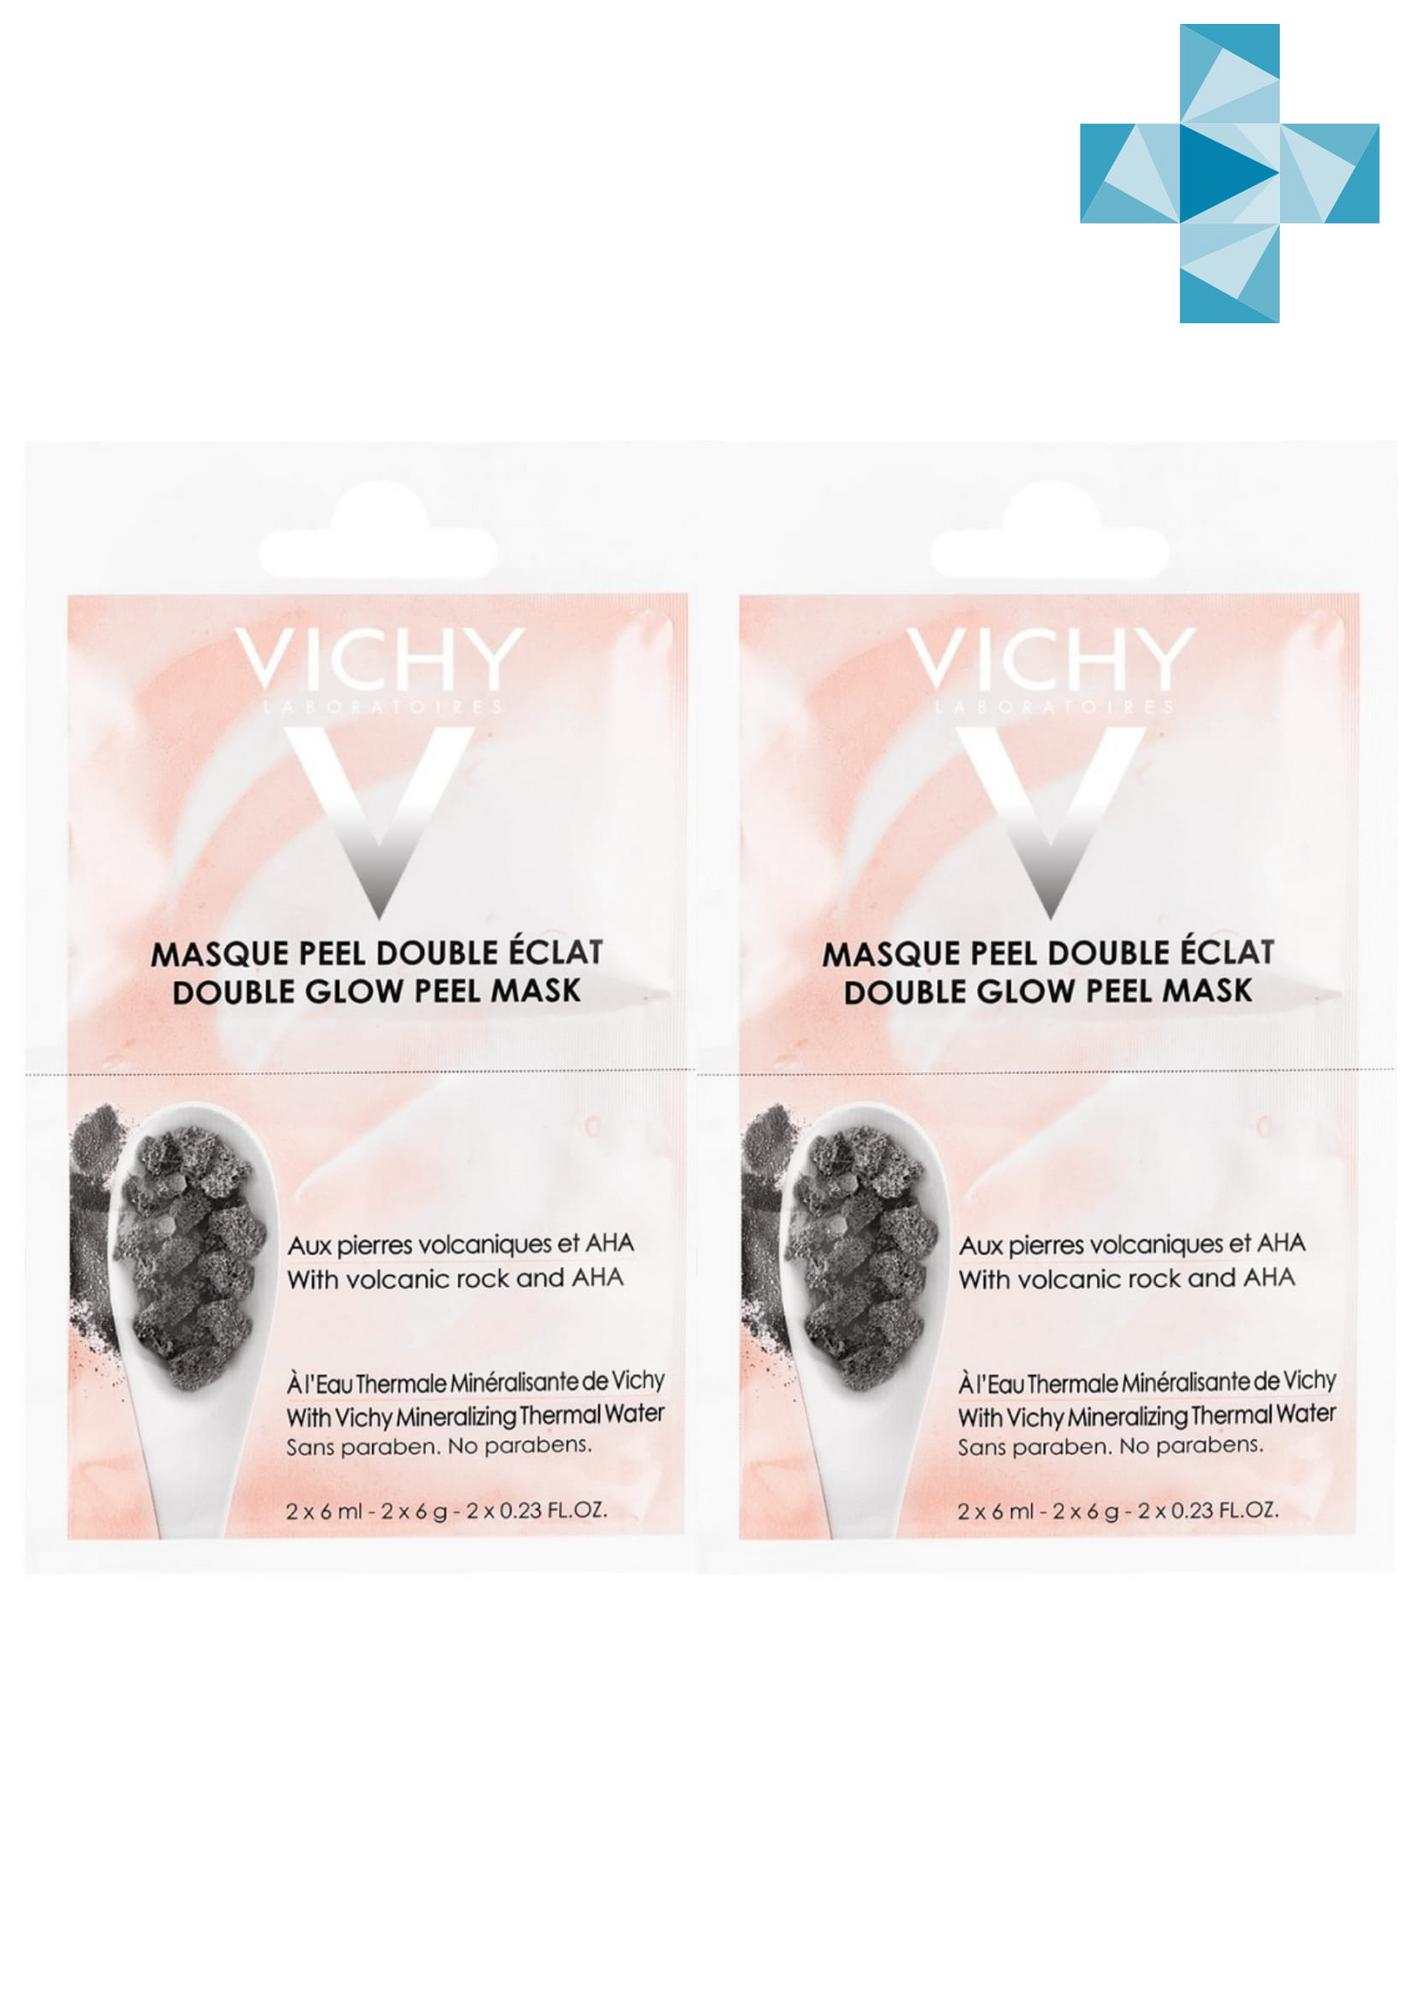 Vichy Комплект Минеральная маска-пилинг Двойное сияние саше 2х6 мл (Комплект из 2 штук) (Vichy, Masque)